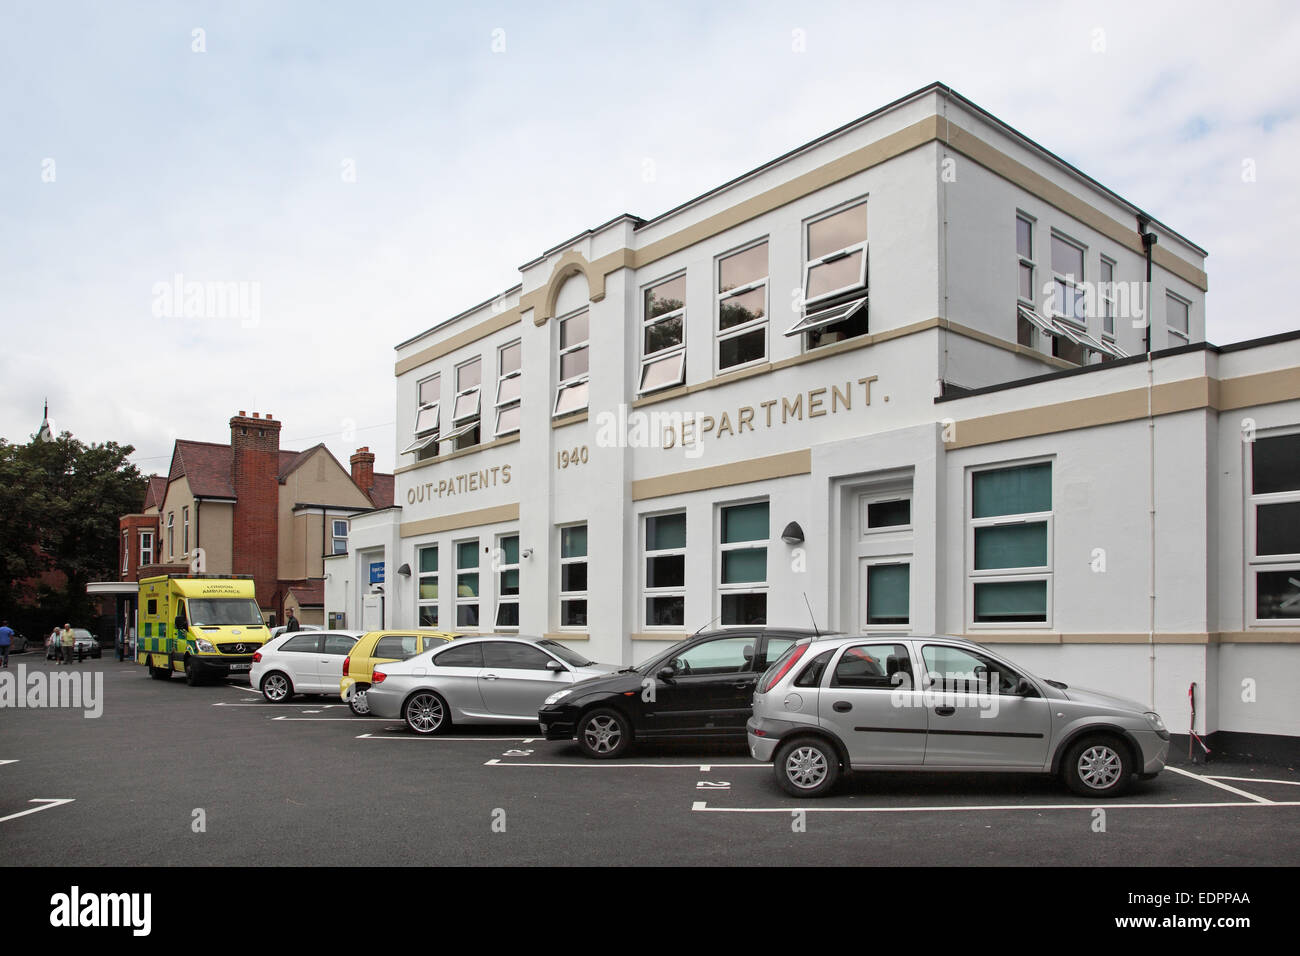 Ouvert récemment Purley War Memorial Hospital, partie de Croydon NHS health services. Rouvert en 2013 après remise à neuf de 11m £ Banque D'Images